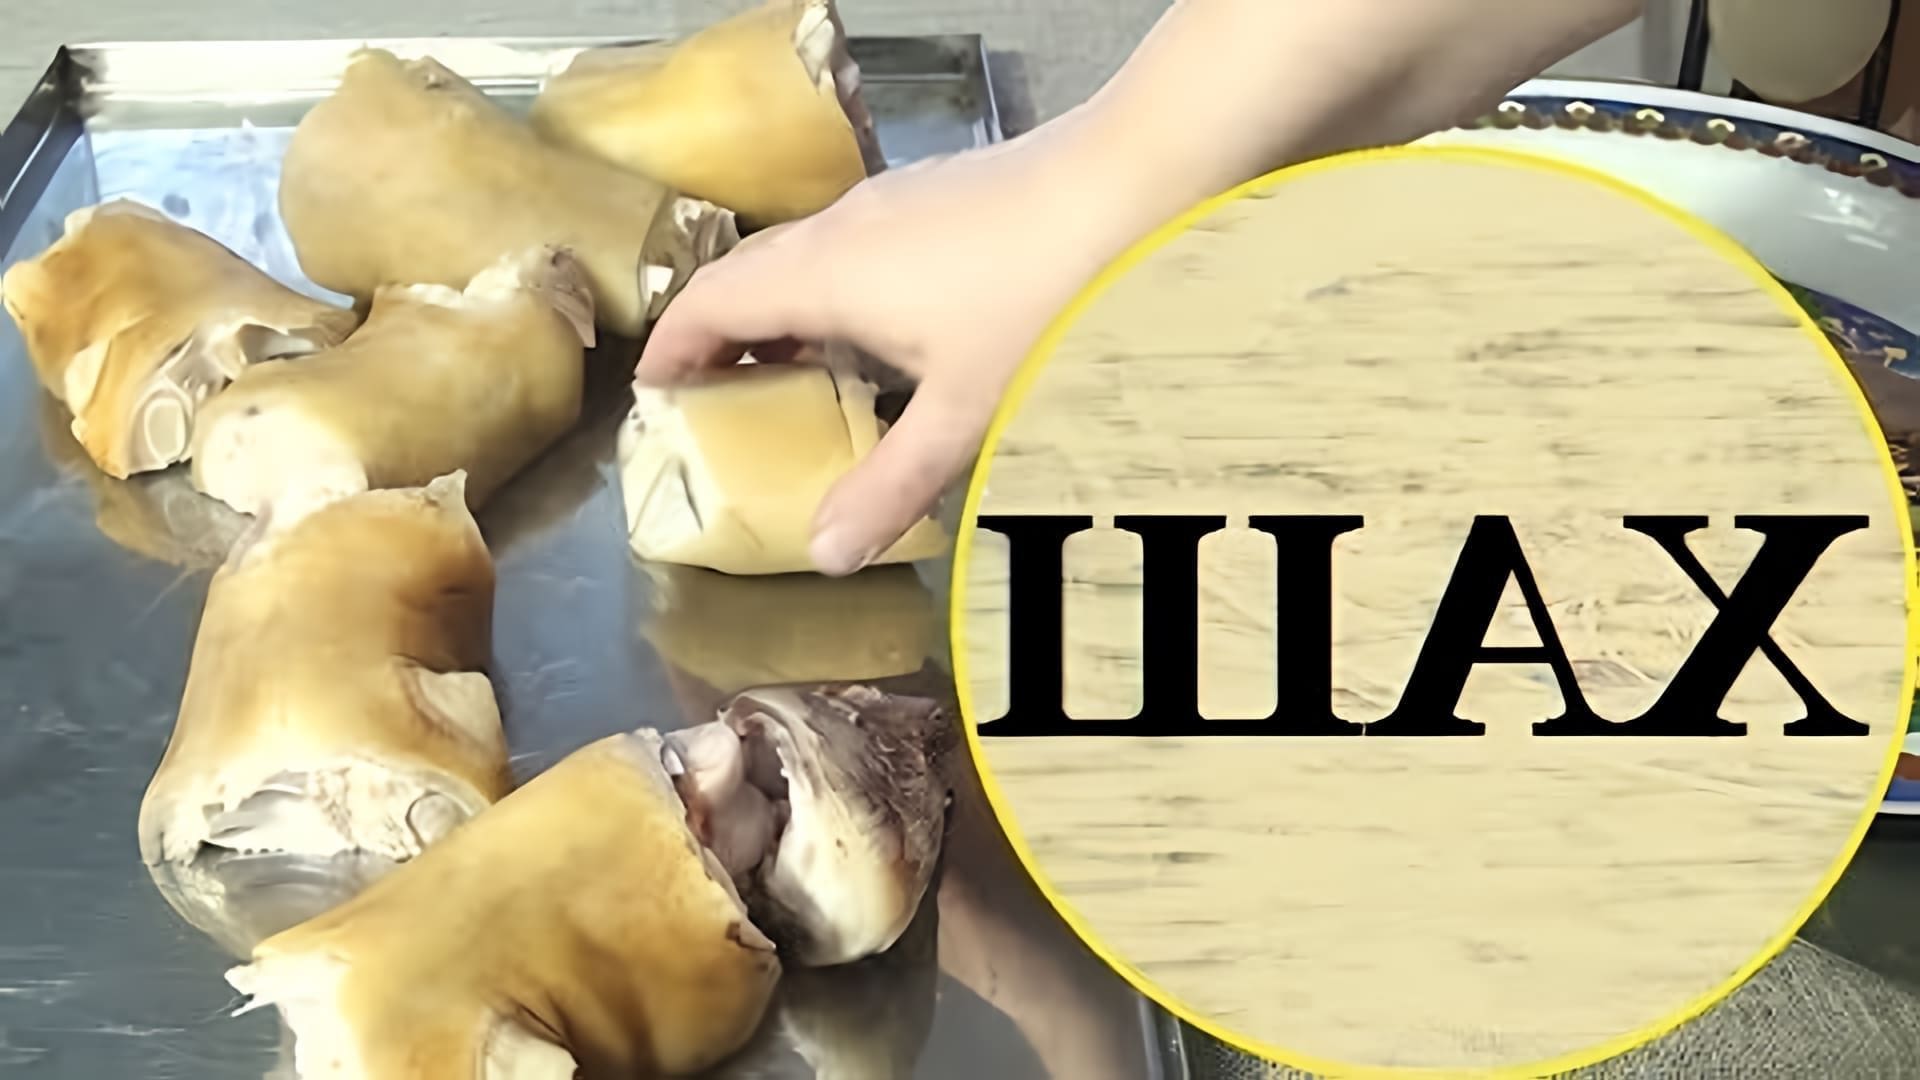 В данном видео демонстрируется процесс приготовления супа из говяжьих ног, который называется хаш